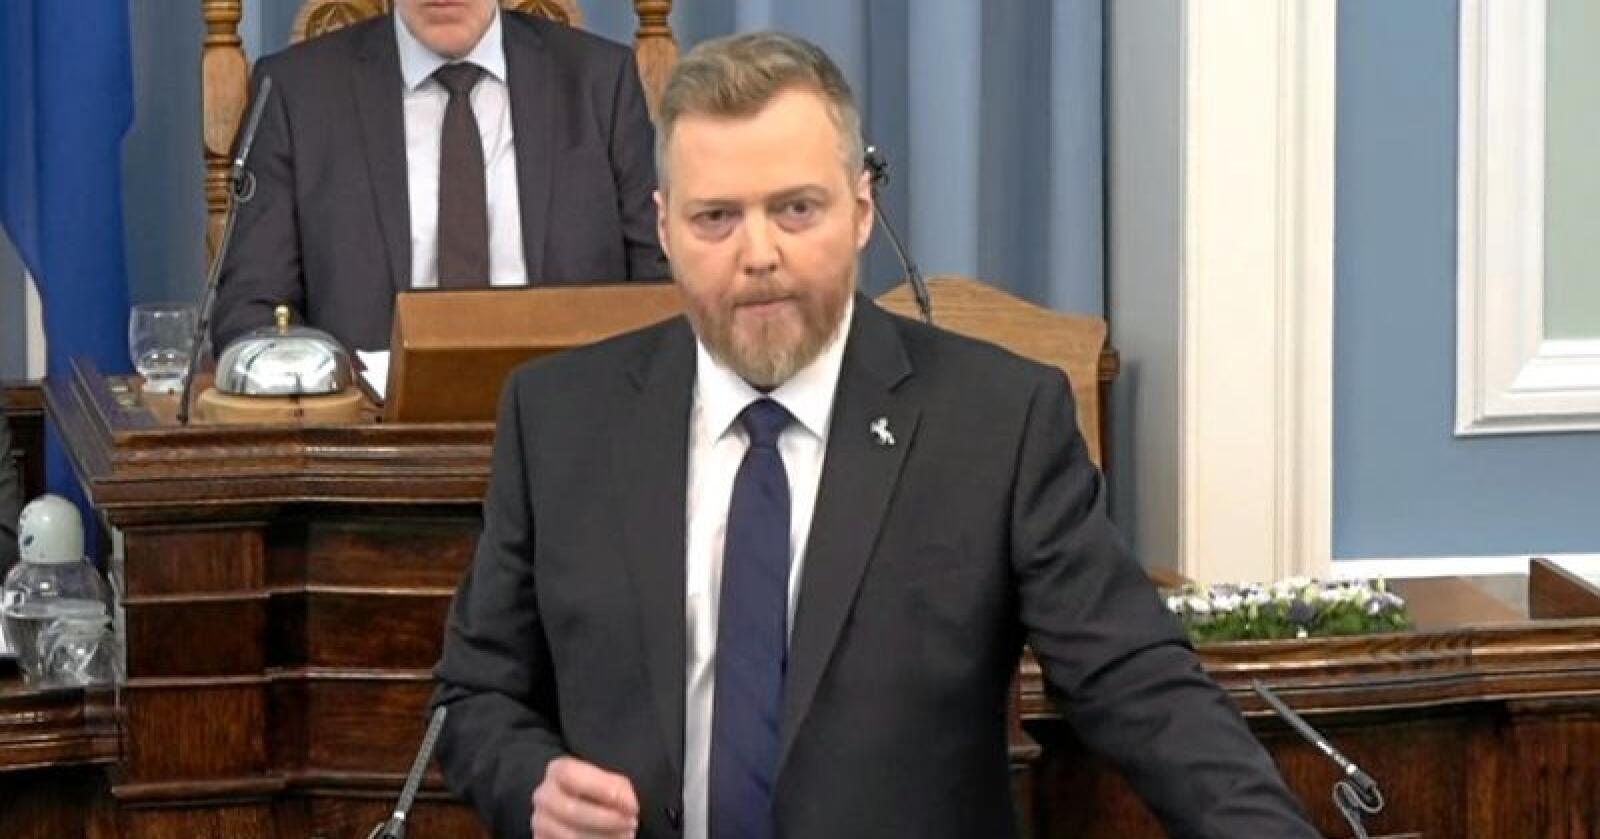 Sigmund Davíð Gunnlaugsson, partileiar i Miðflokkurinn. Foto: Miðflokkurinn